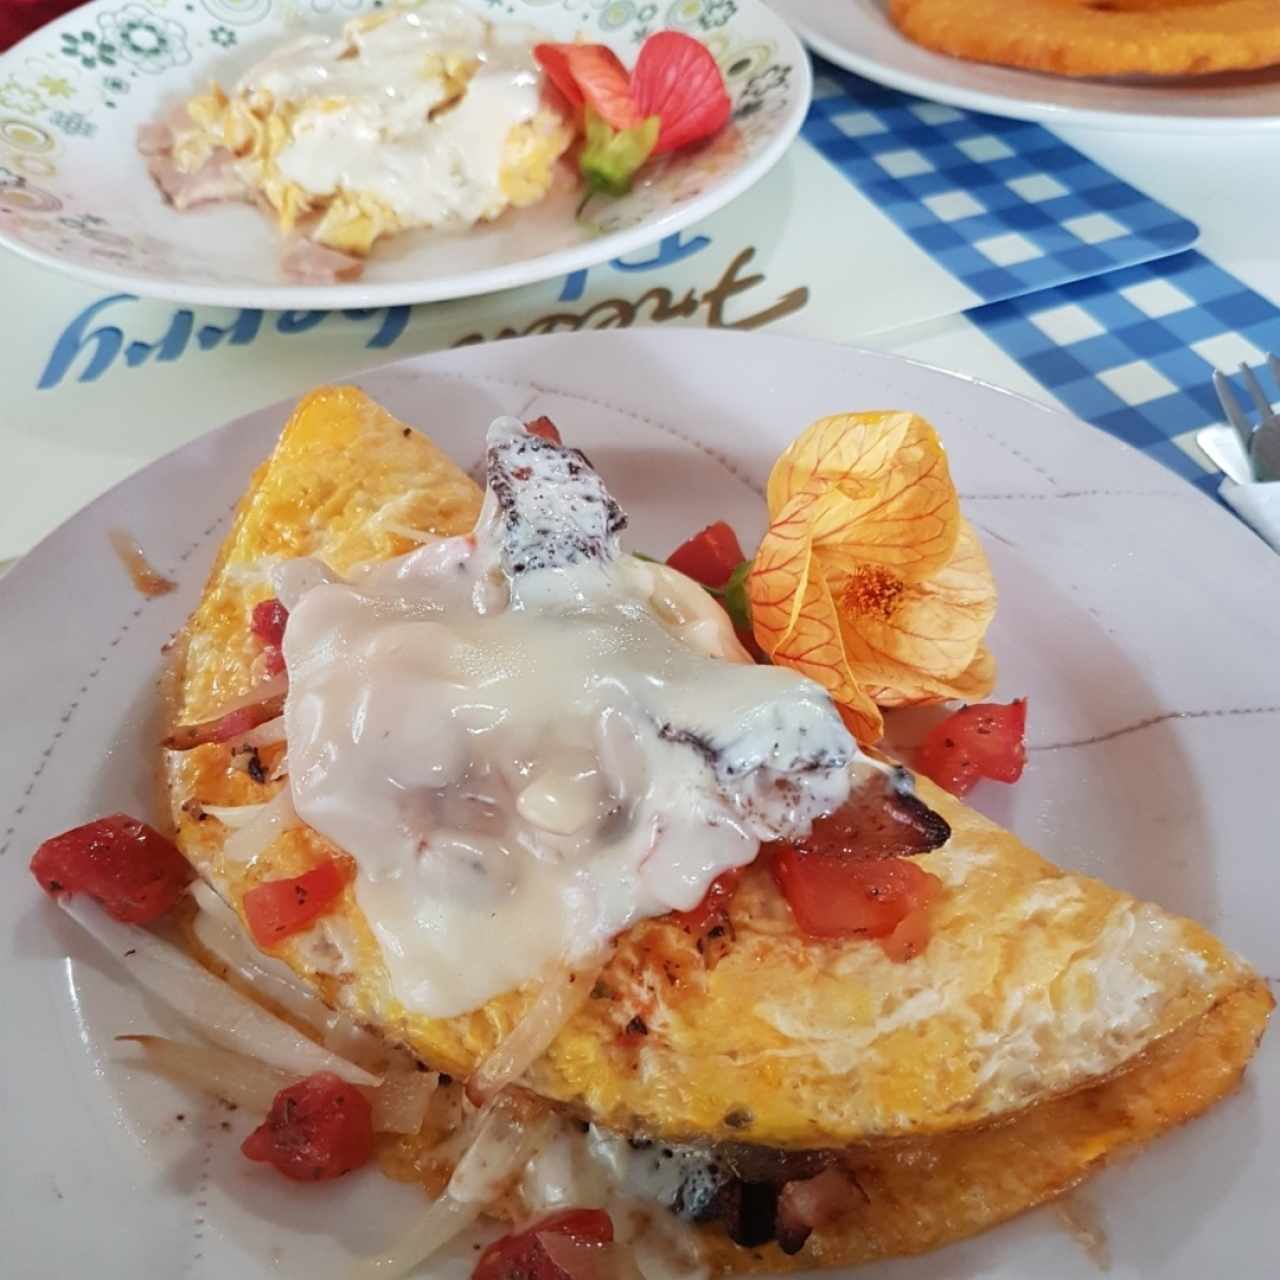 omelet de bacon, queso y vegetales